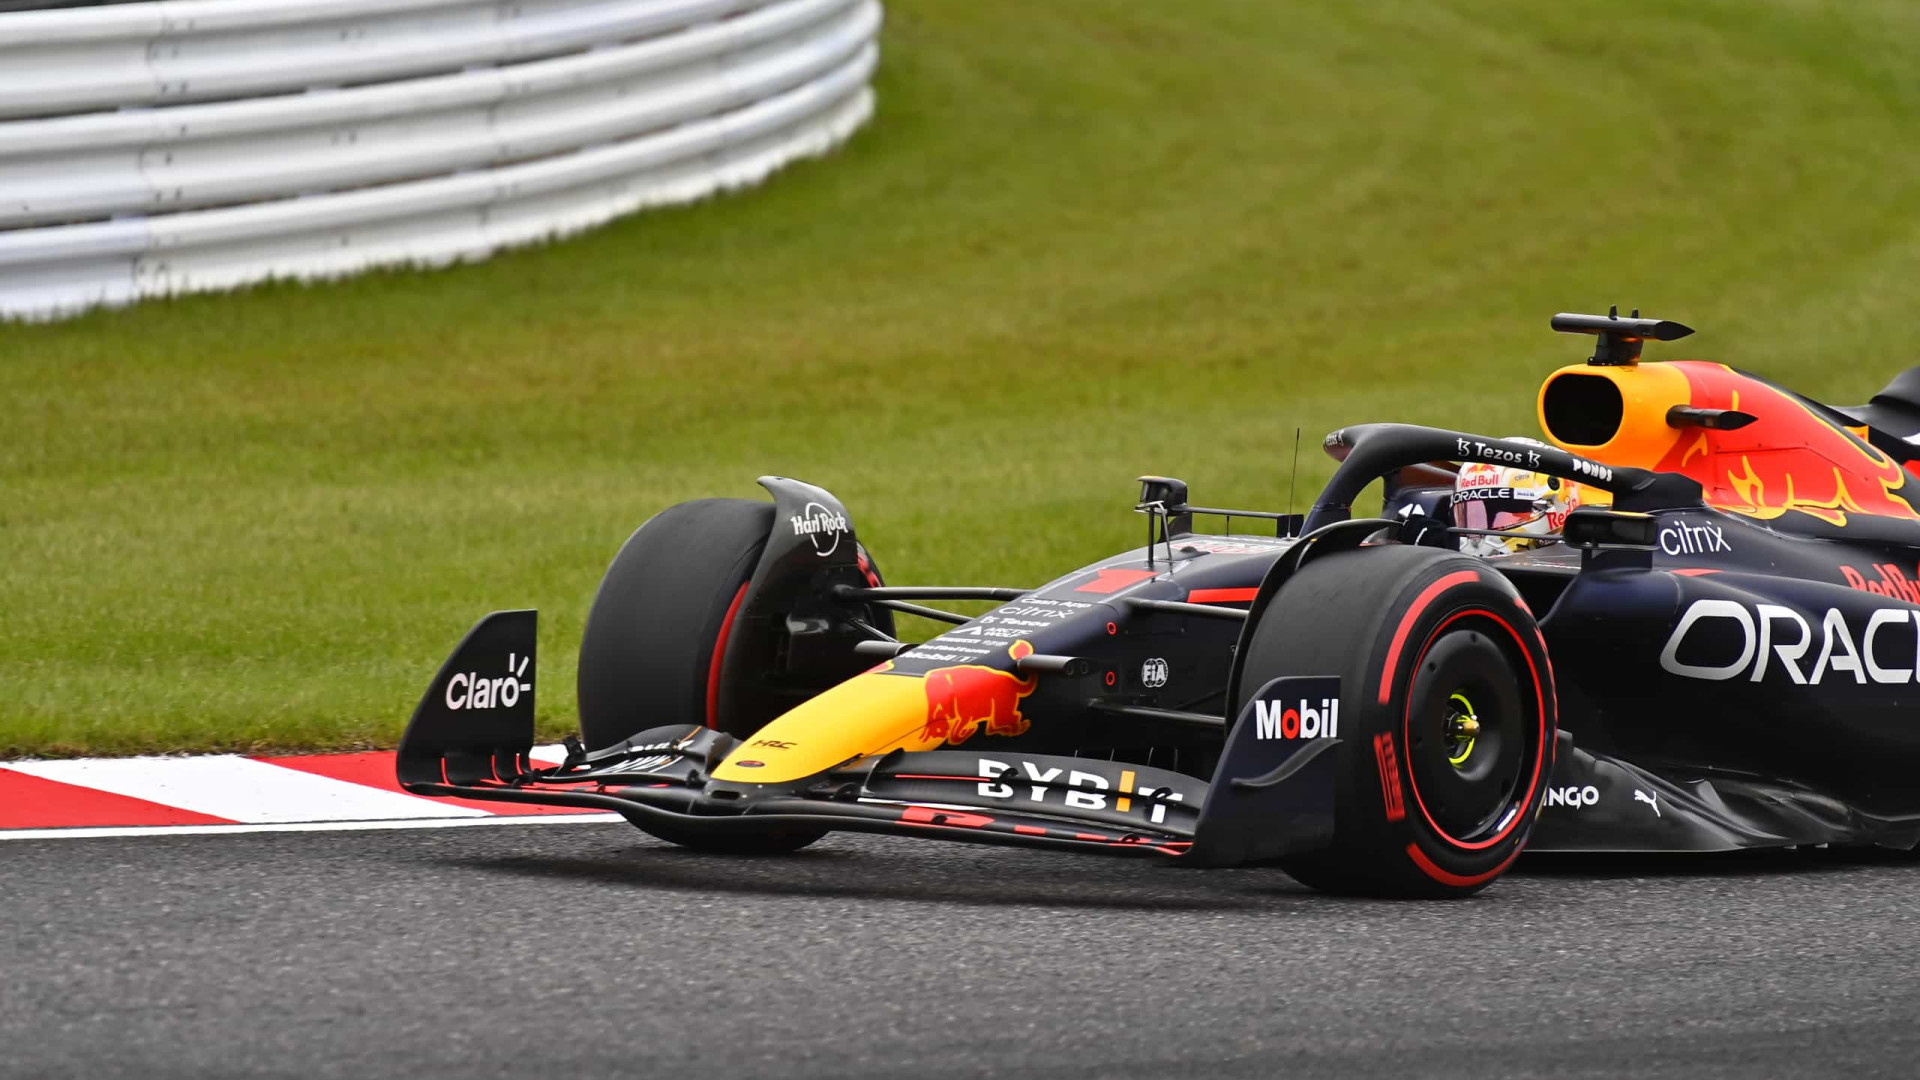 Polêmicas e erros estão roubando a cena no bicampeonato de Verstappen na F1